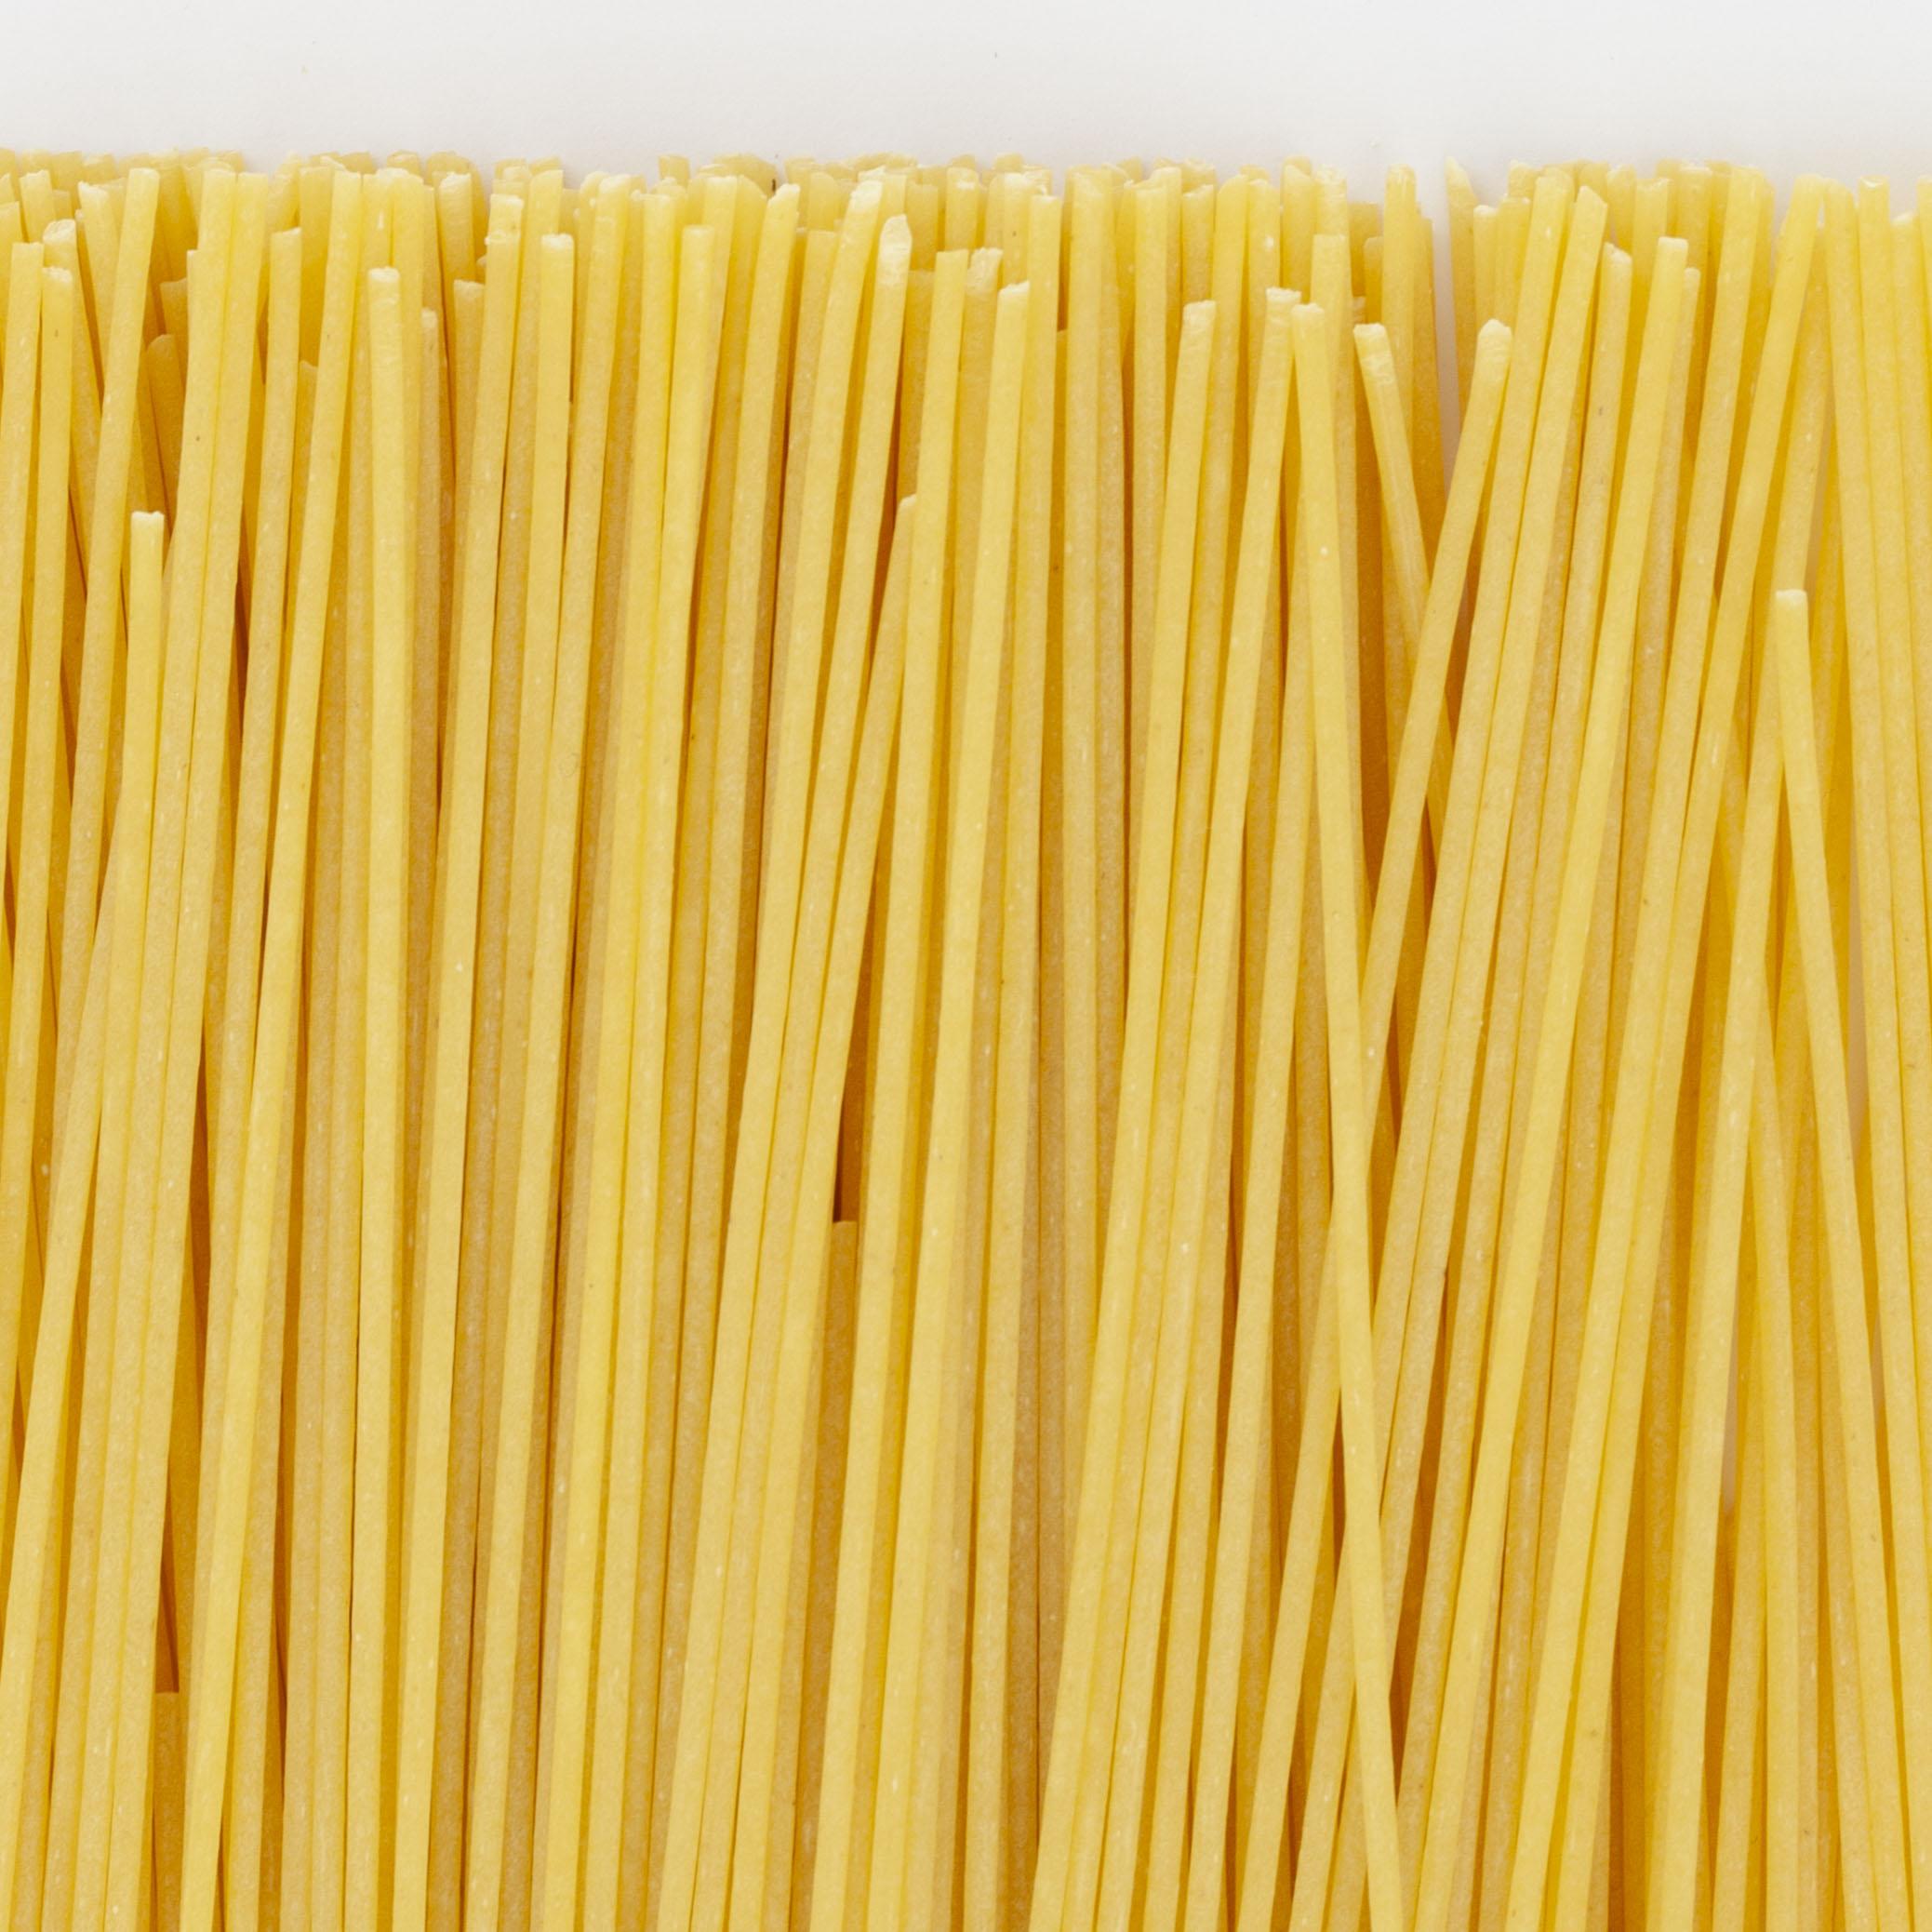 11030-spaghetti-d’alsace-7oeufs